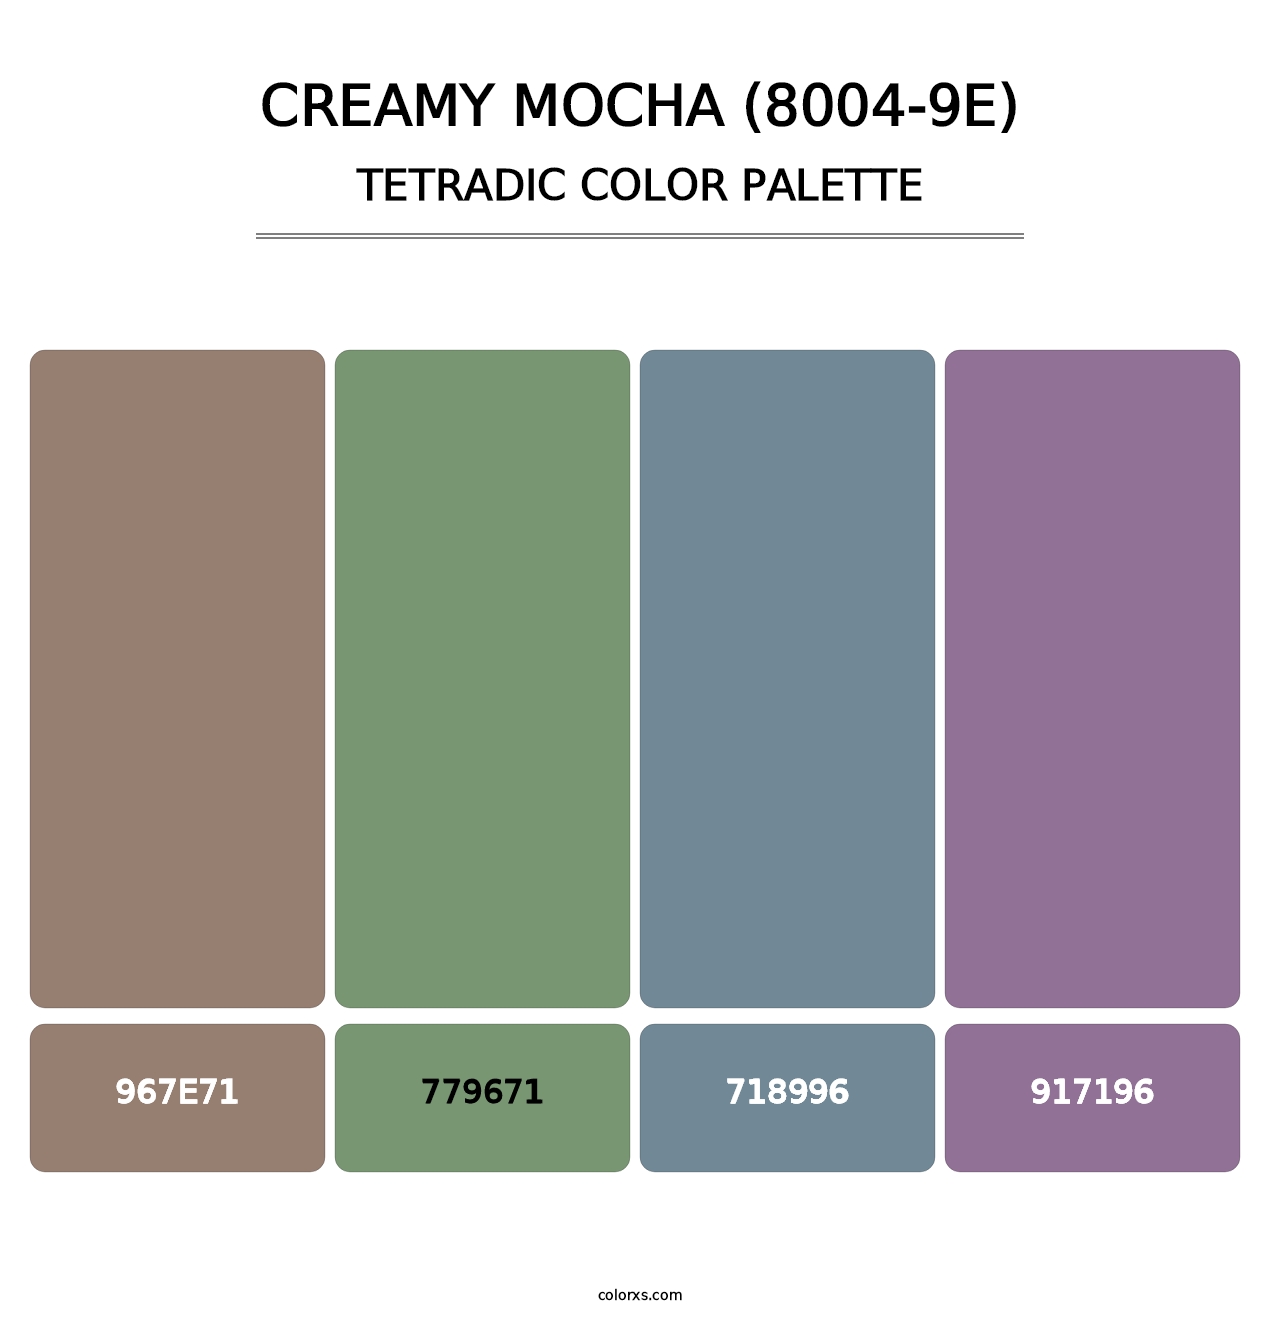 Creamy Mocha (8004-9E) - Tetradic Color Palette